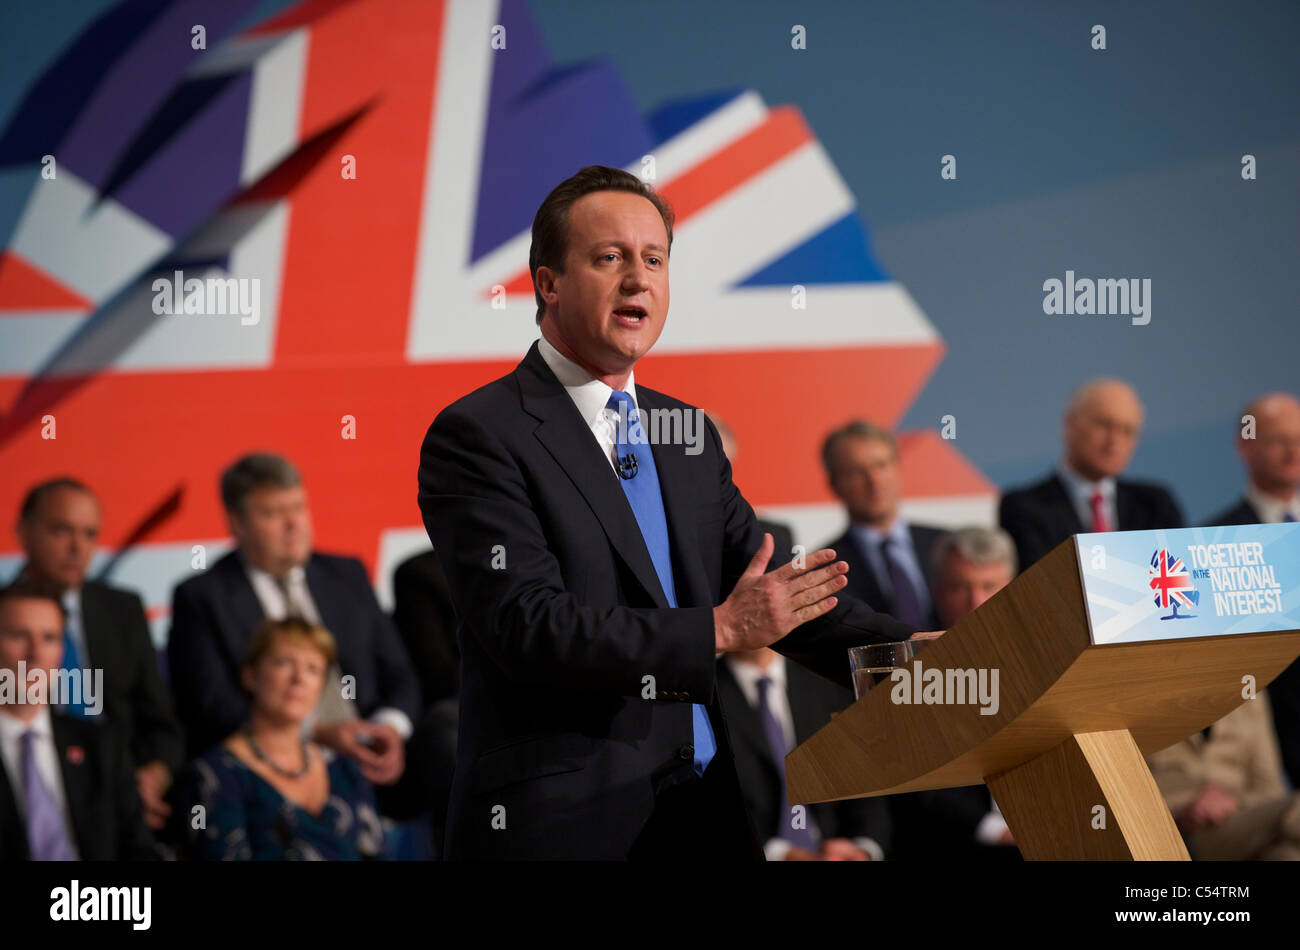 El Primer Ministro británico, David Cameron, pronuncia su discurso a los delegados en la conferencia del partido conservador. Foto de stock